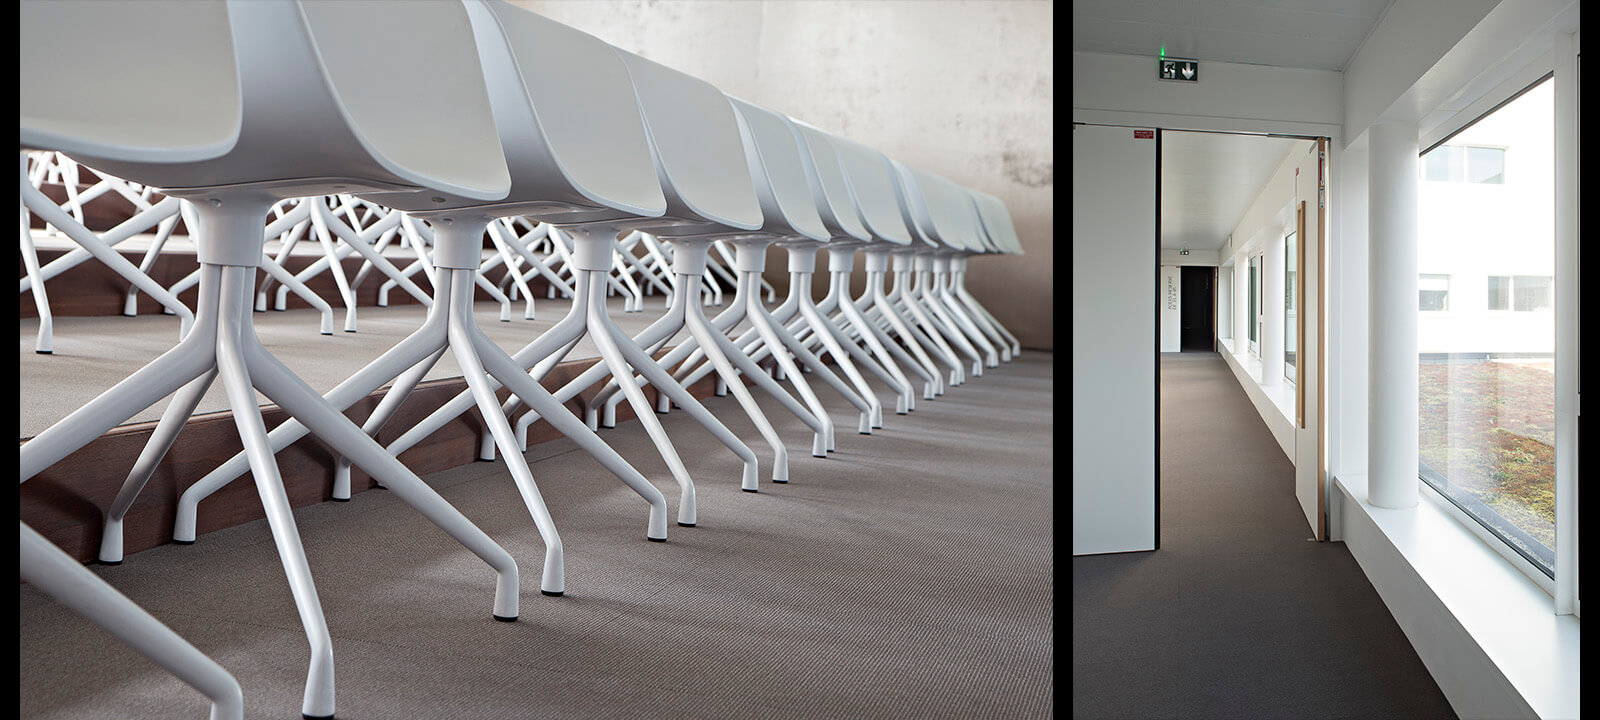 Zoom sur les pieds de chaises design de la salle de conférence du bâtiment et dégagement avec vue sur toit végétalisé, photographié par Gwenaelle Hoyet, photographe d'architecture et de décoration basé à Nantes